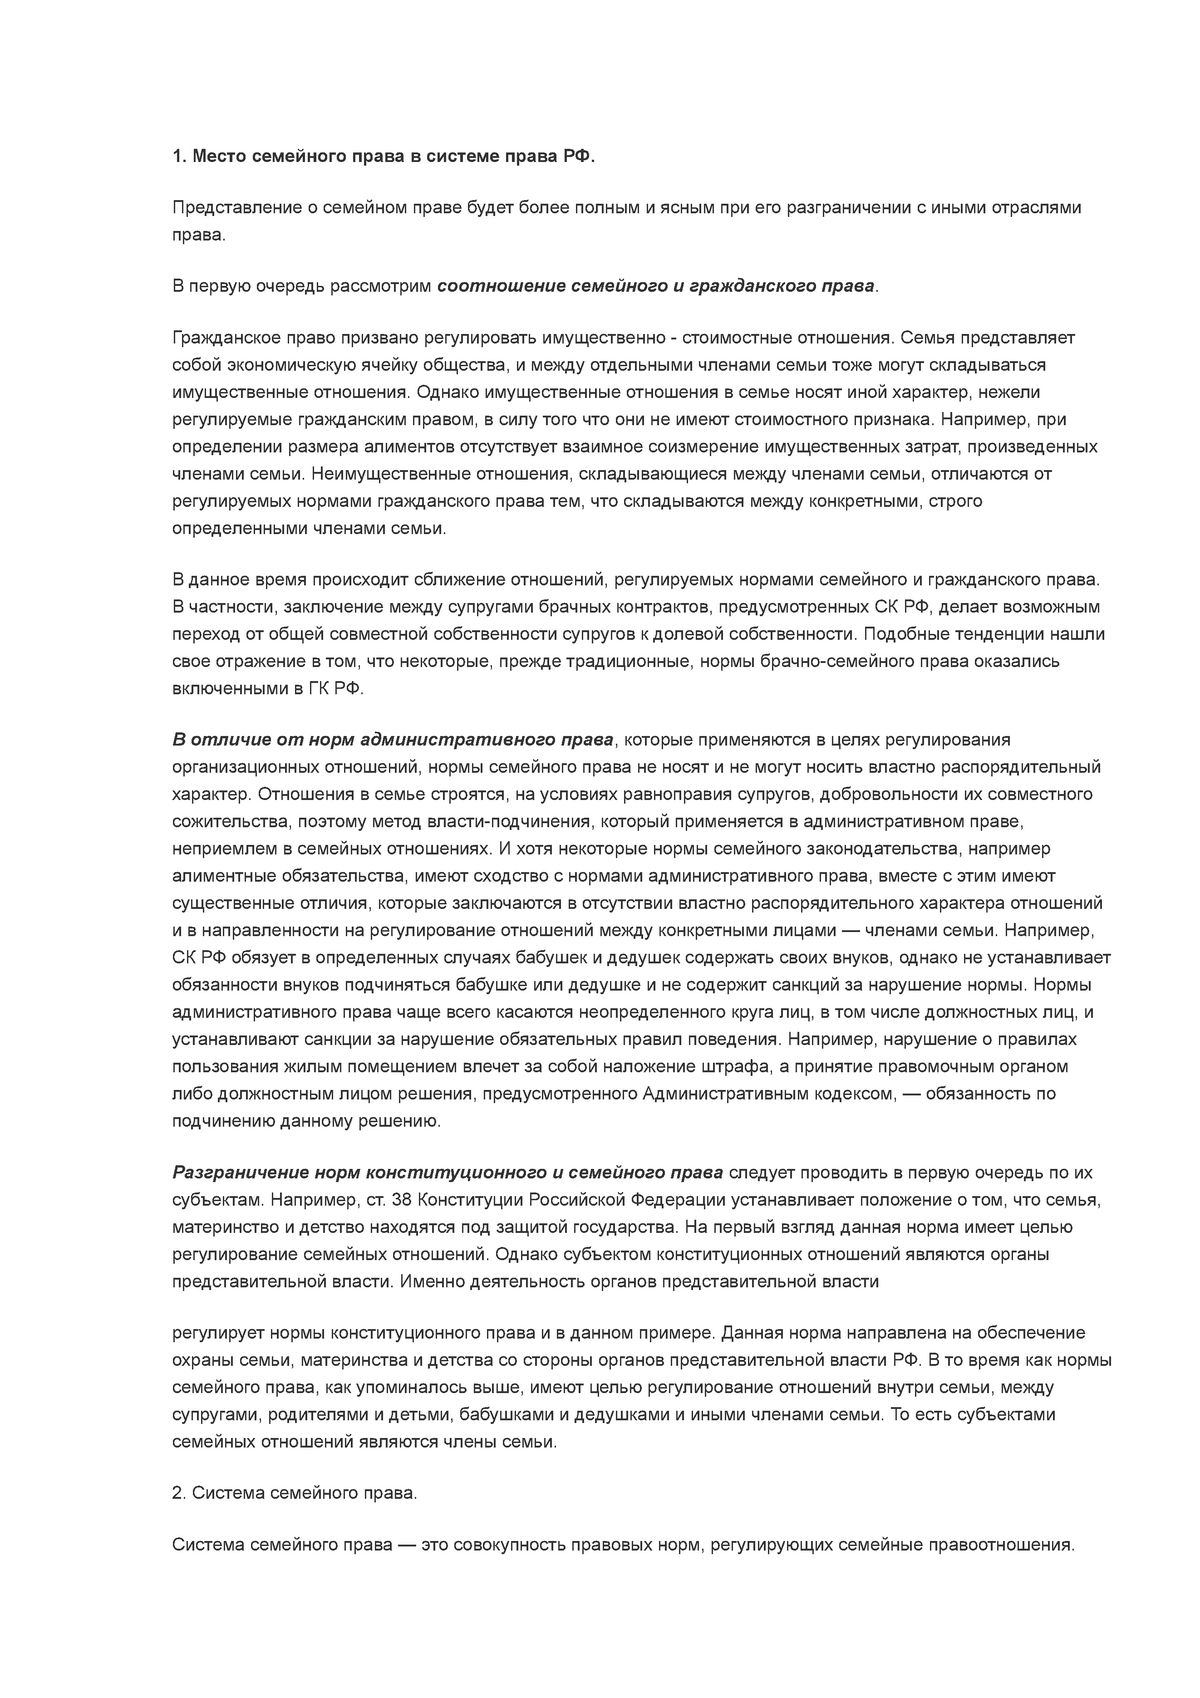  Эссе по теме Место административного права в системе права РФ